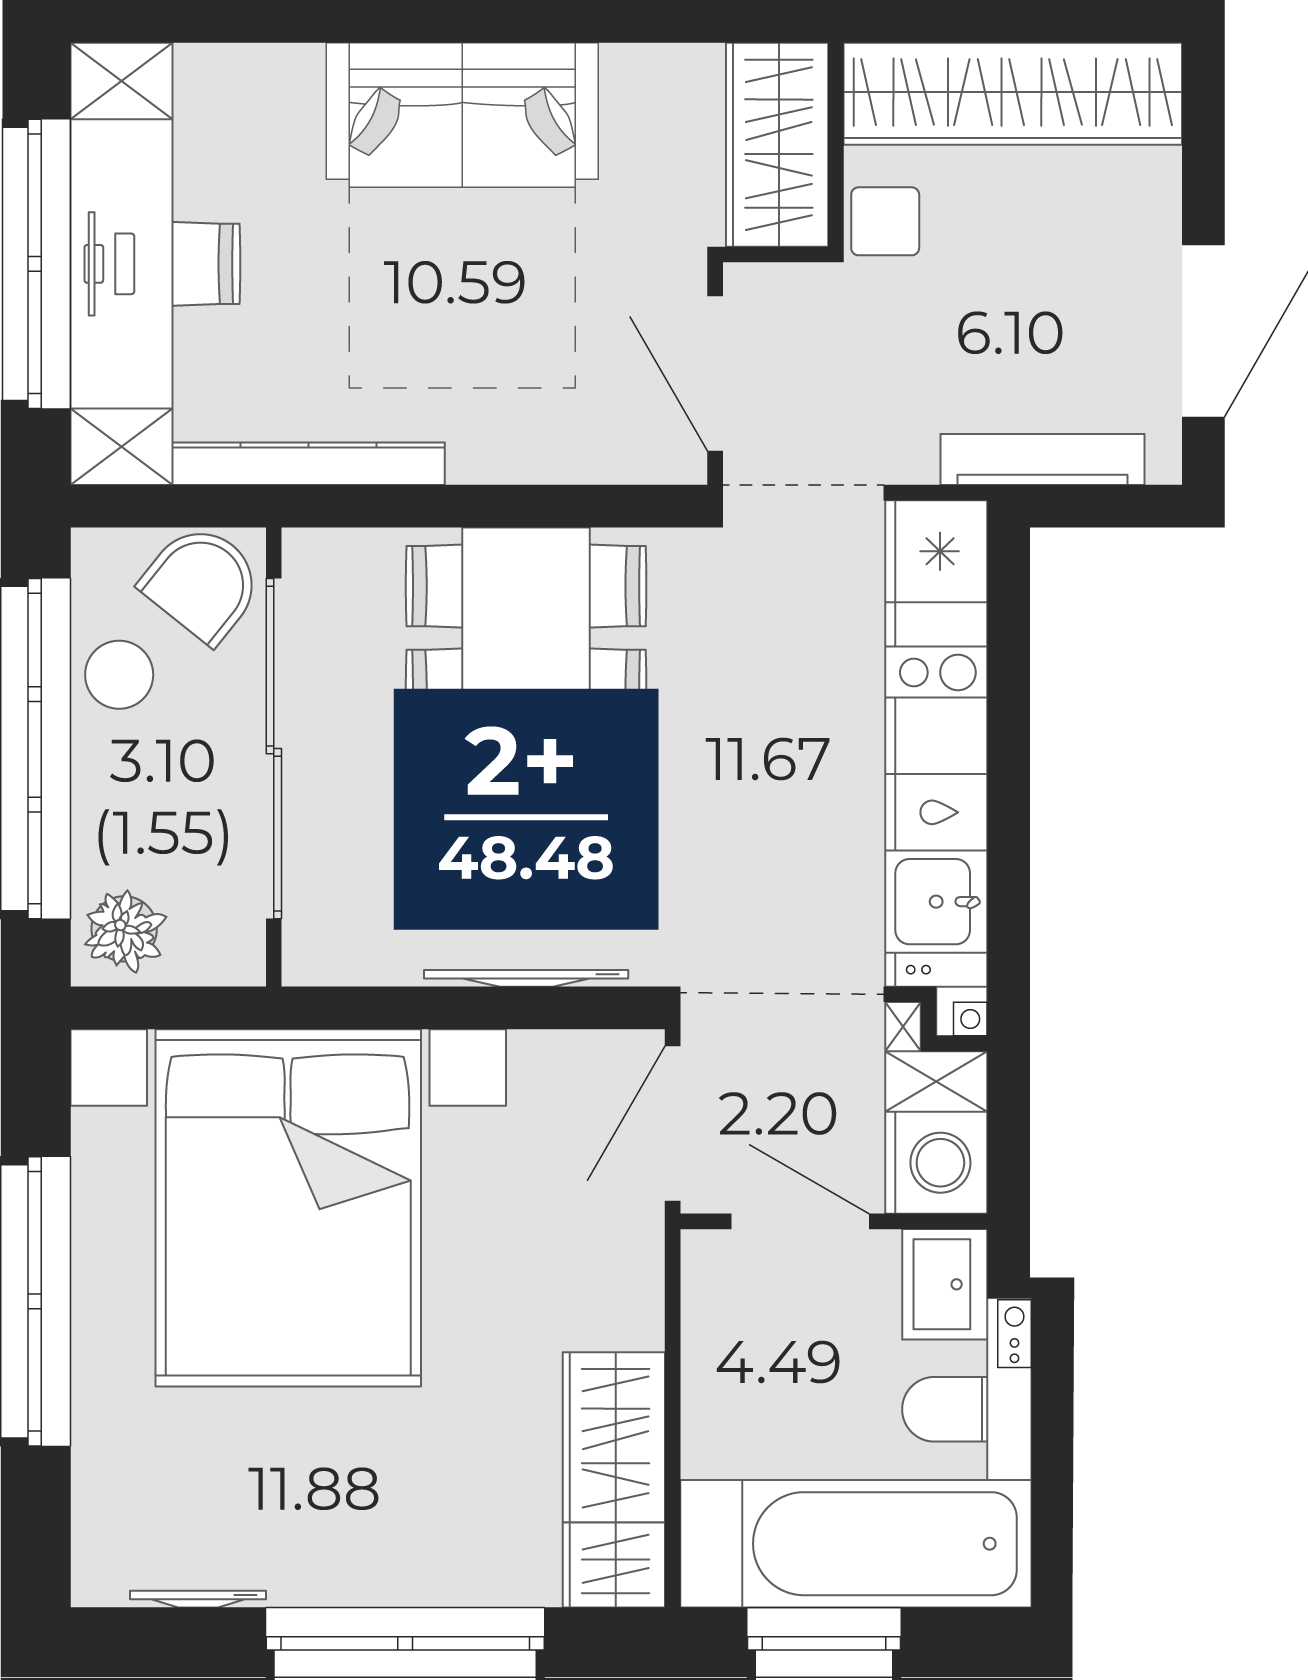 Квартира № 130, 2-комнатная, 48.48 кв. м, 15 этаж